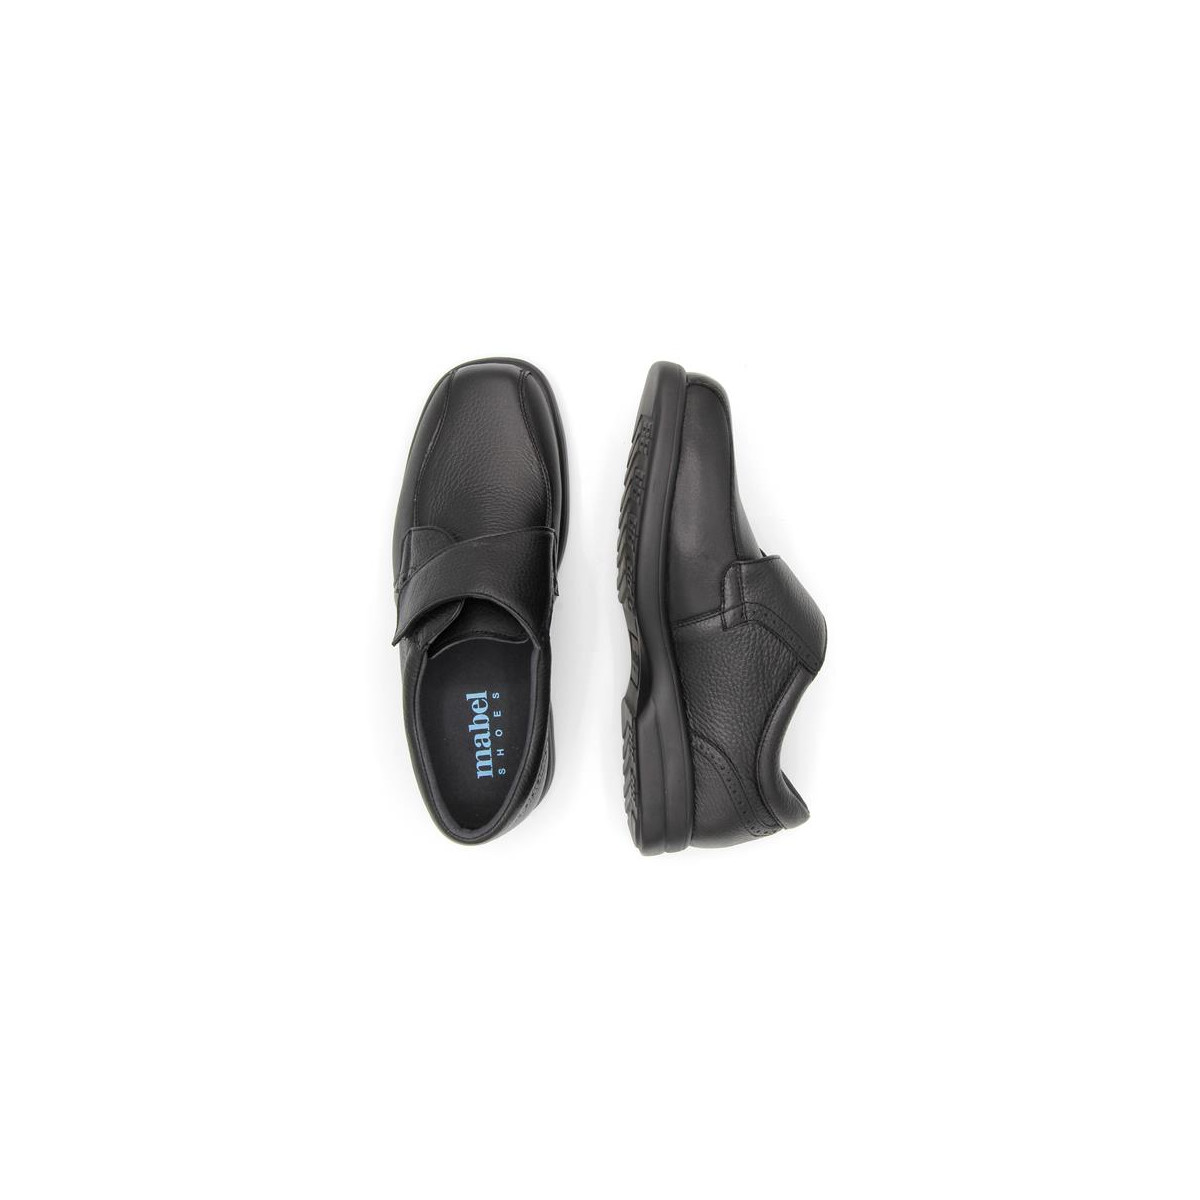 Chaussures pieds sensibles en cuir à velcro - Noir - Mabel Shoes